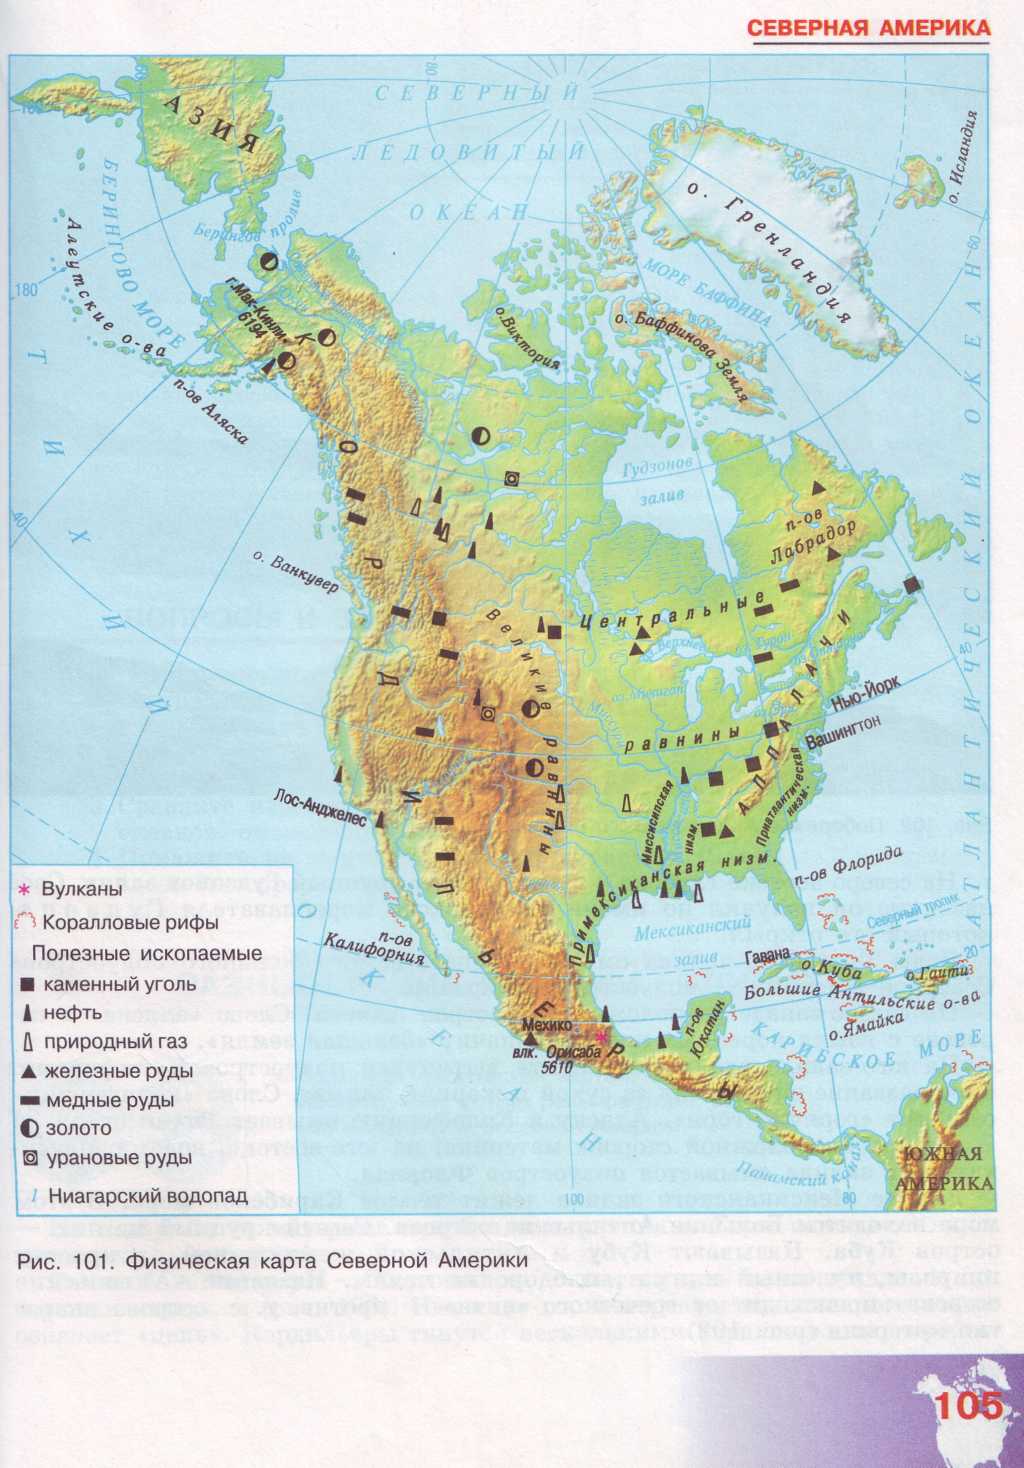 Полезные ископаемые материка северная америка